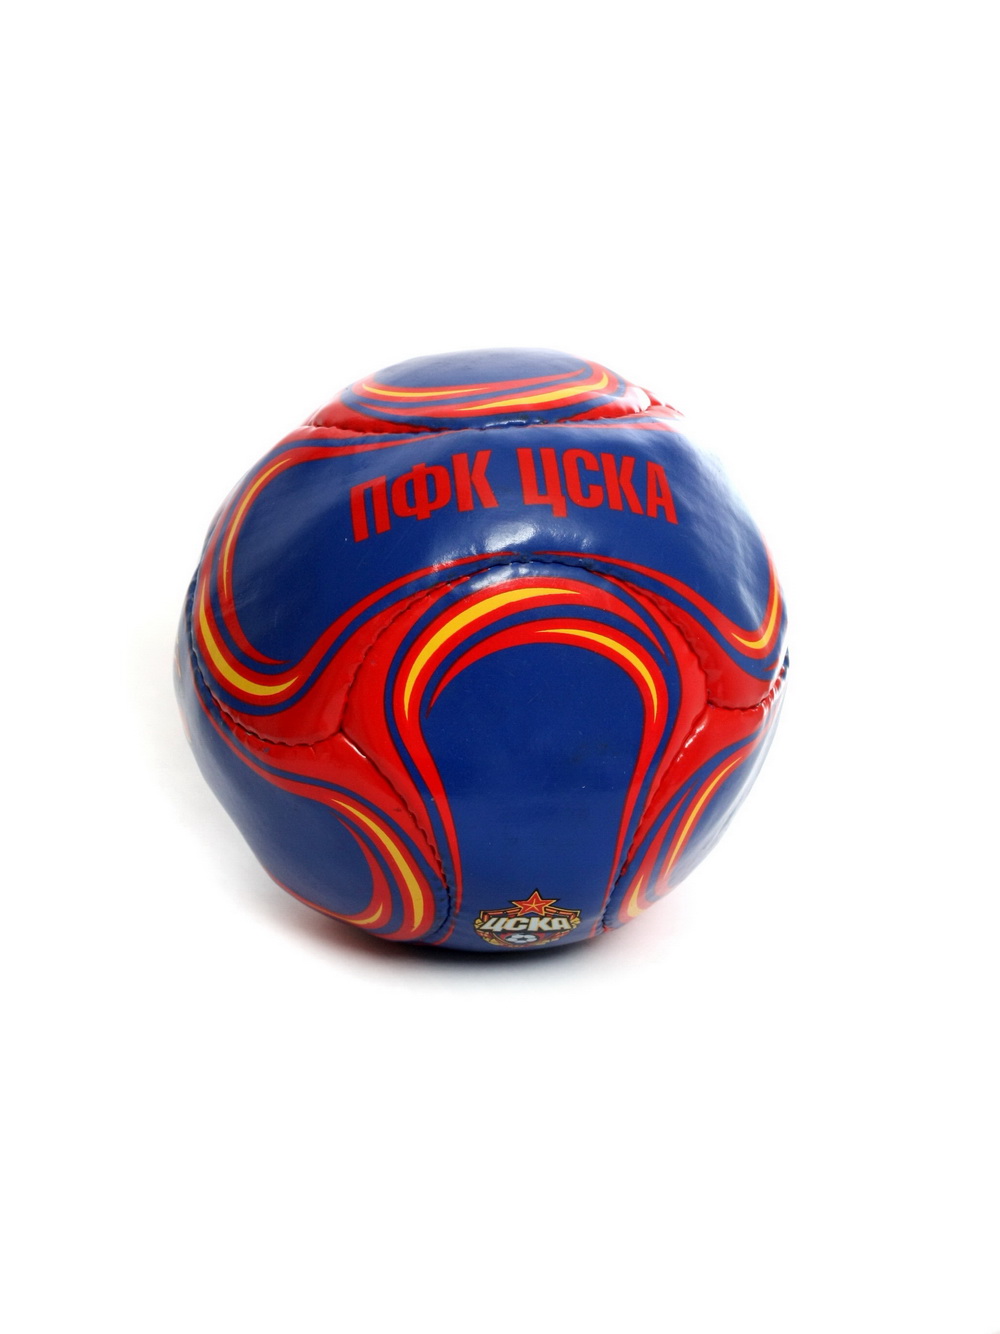 Мяч сувенирный красно-синий "Эмблема и талисман", размер 2 от Cskashop